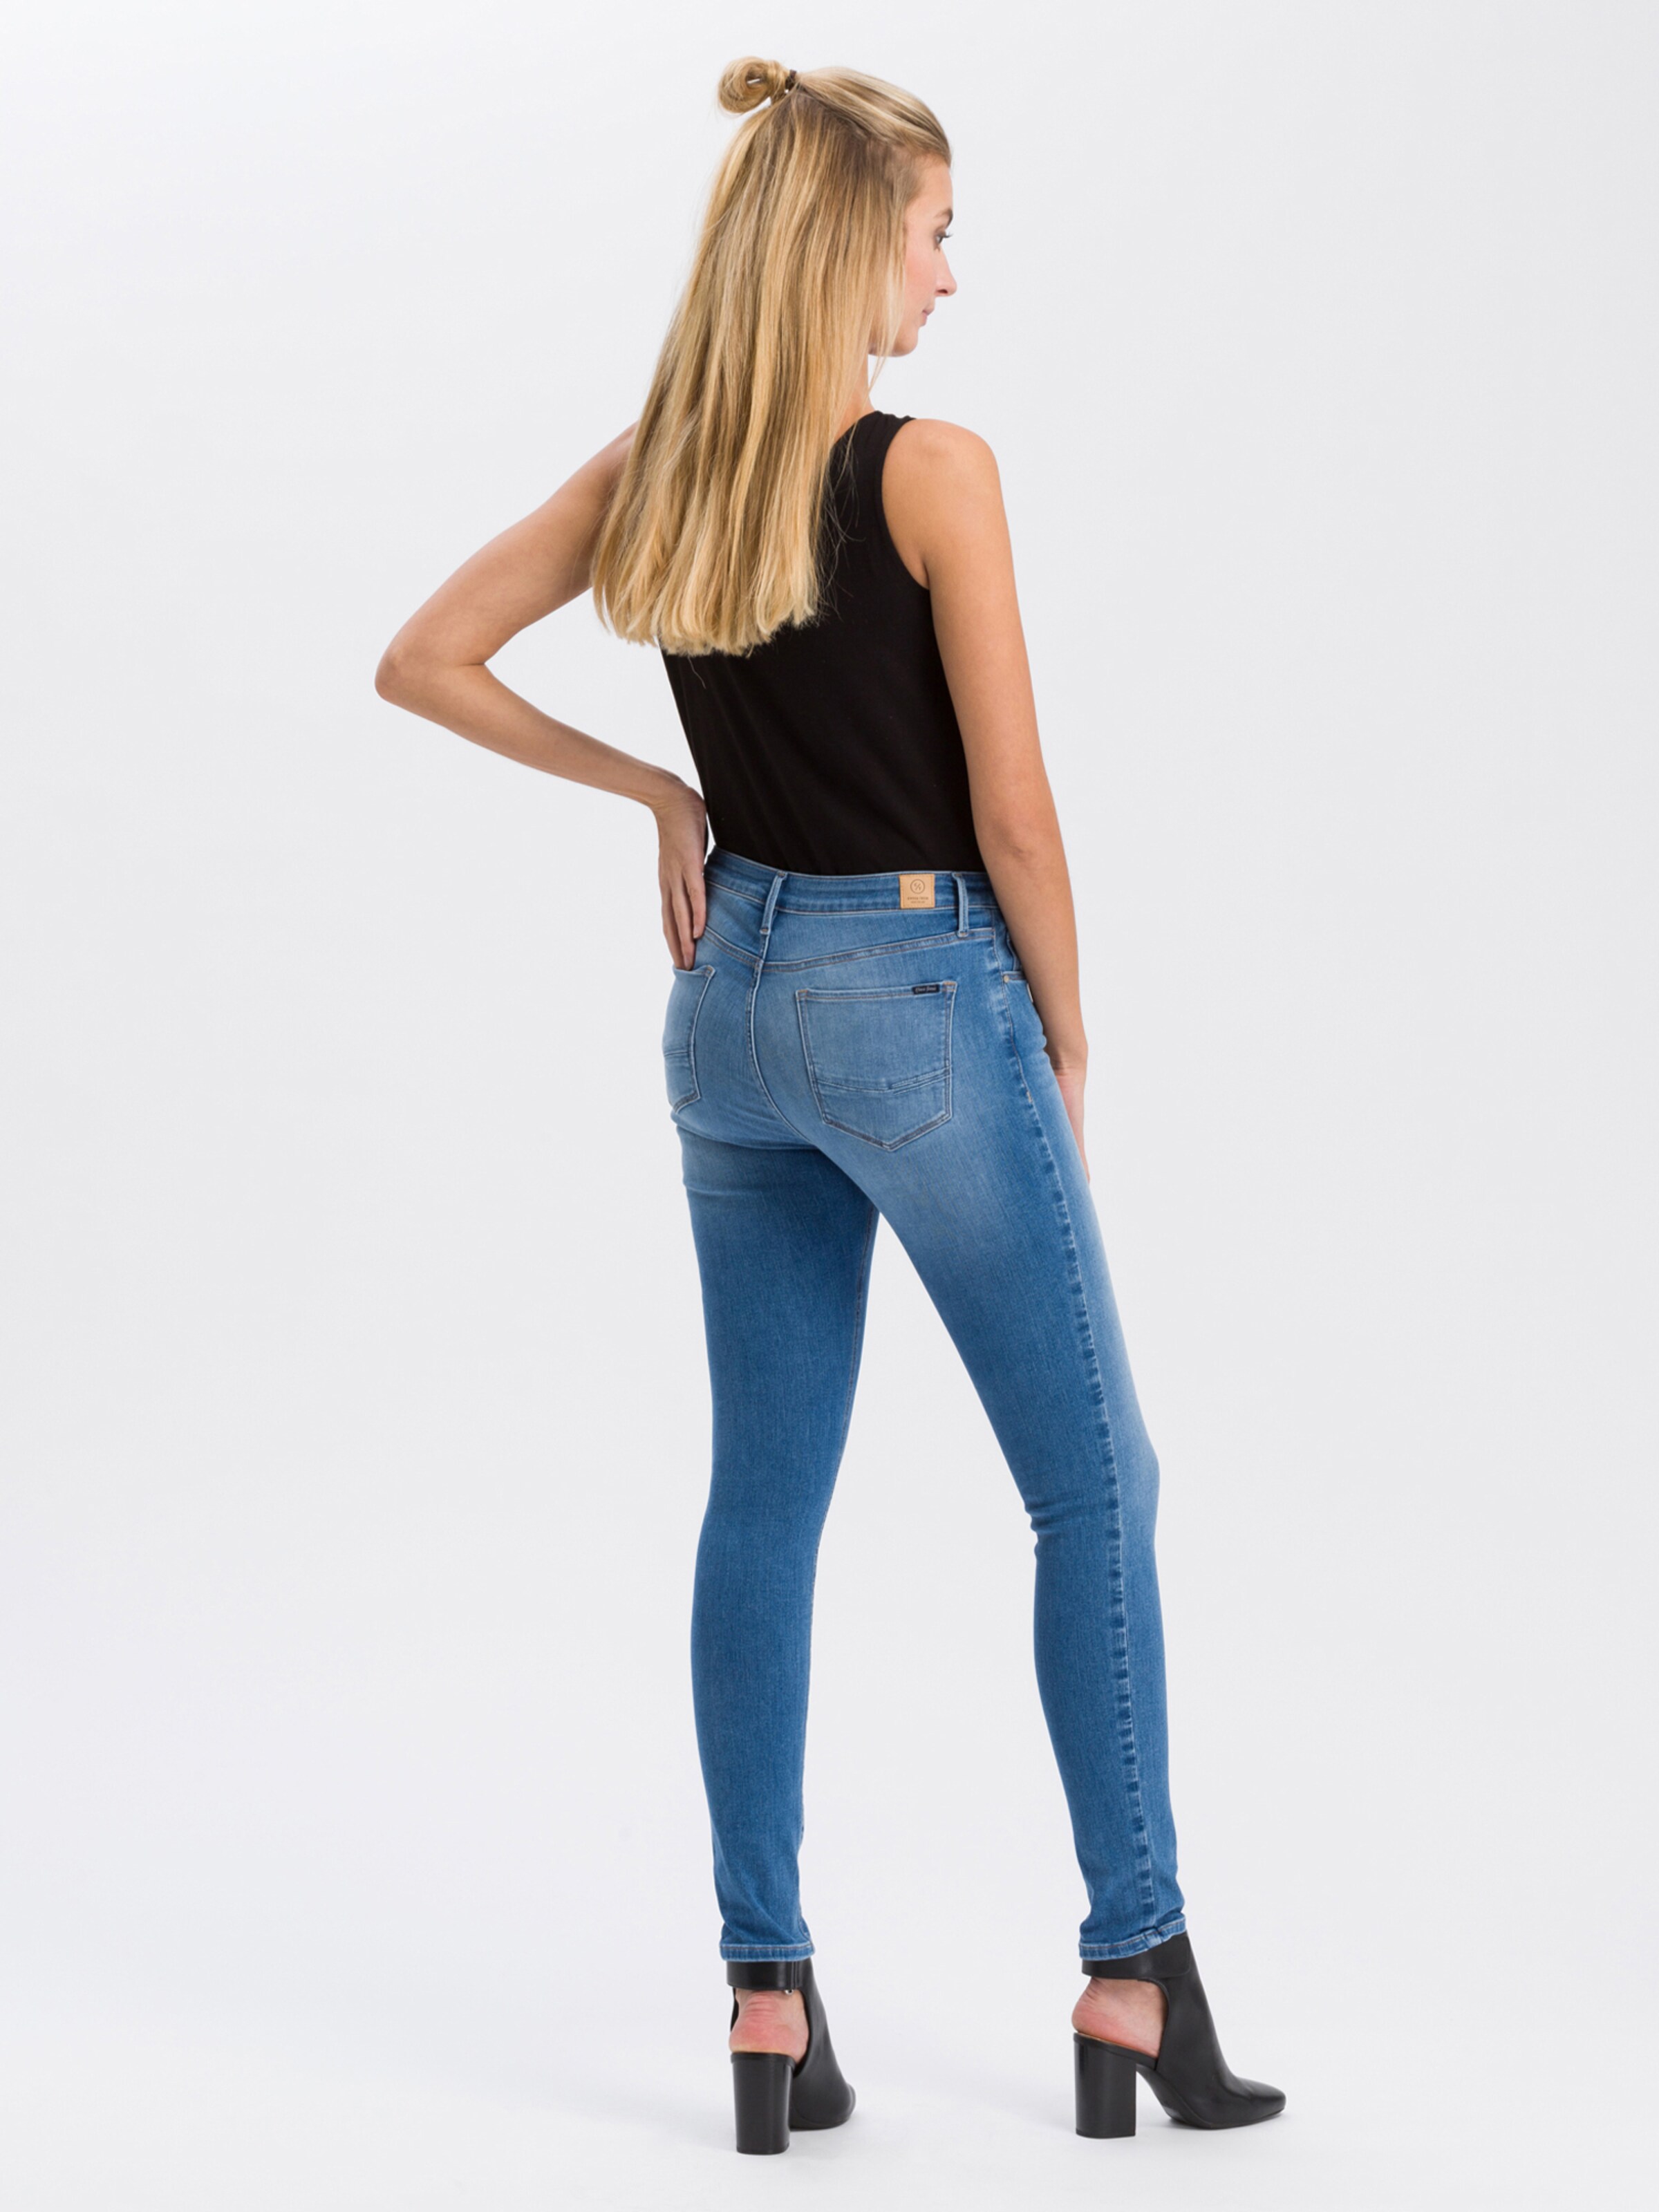 Frauen Große Größen Cross Jeans Jeans - Alan in Blau, Hellblau - RX30620